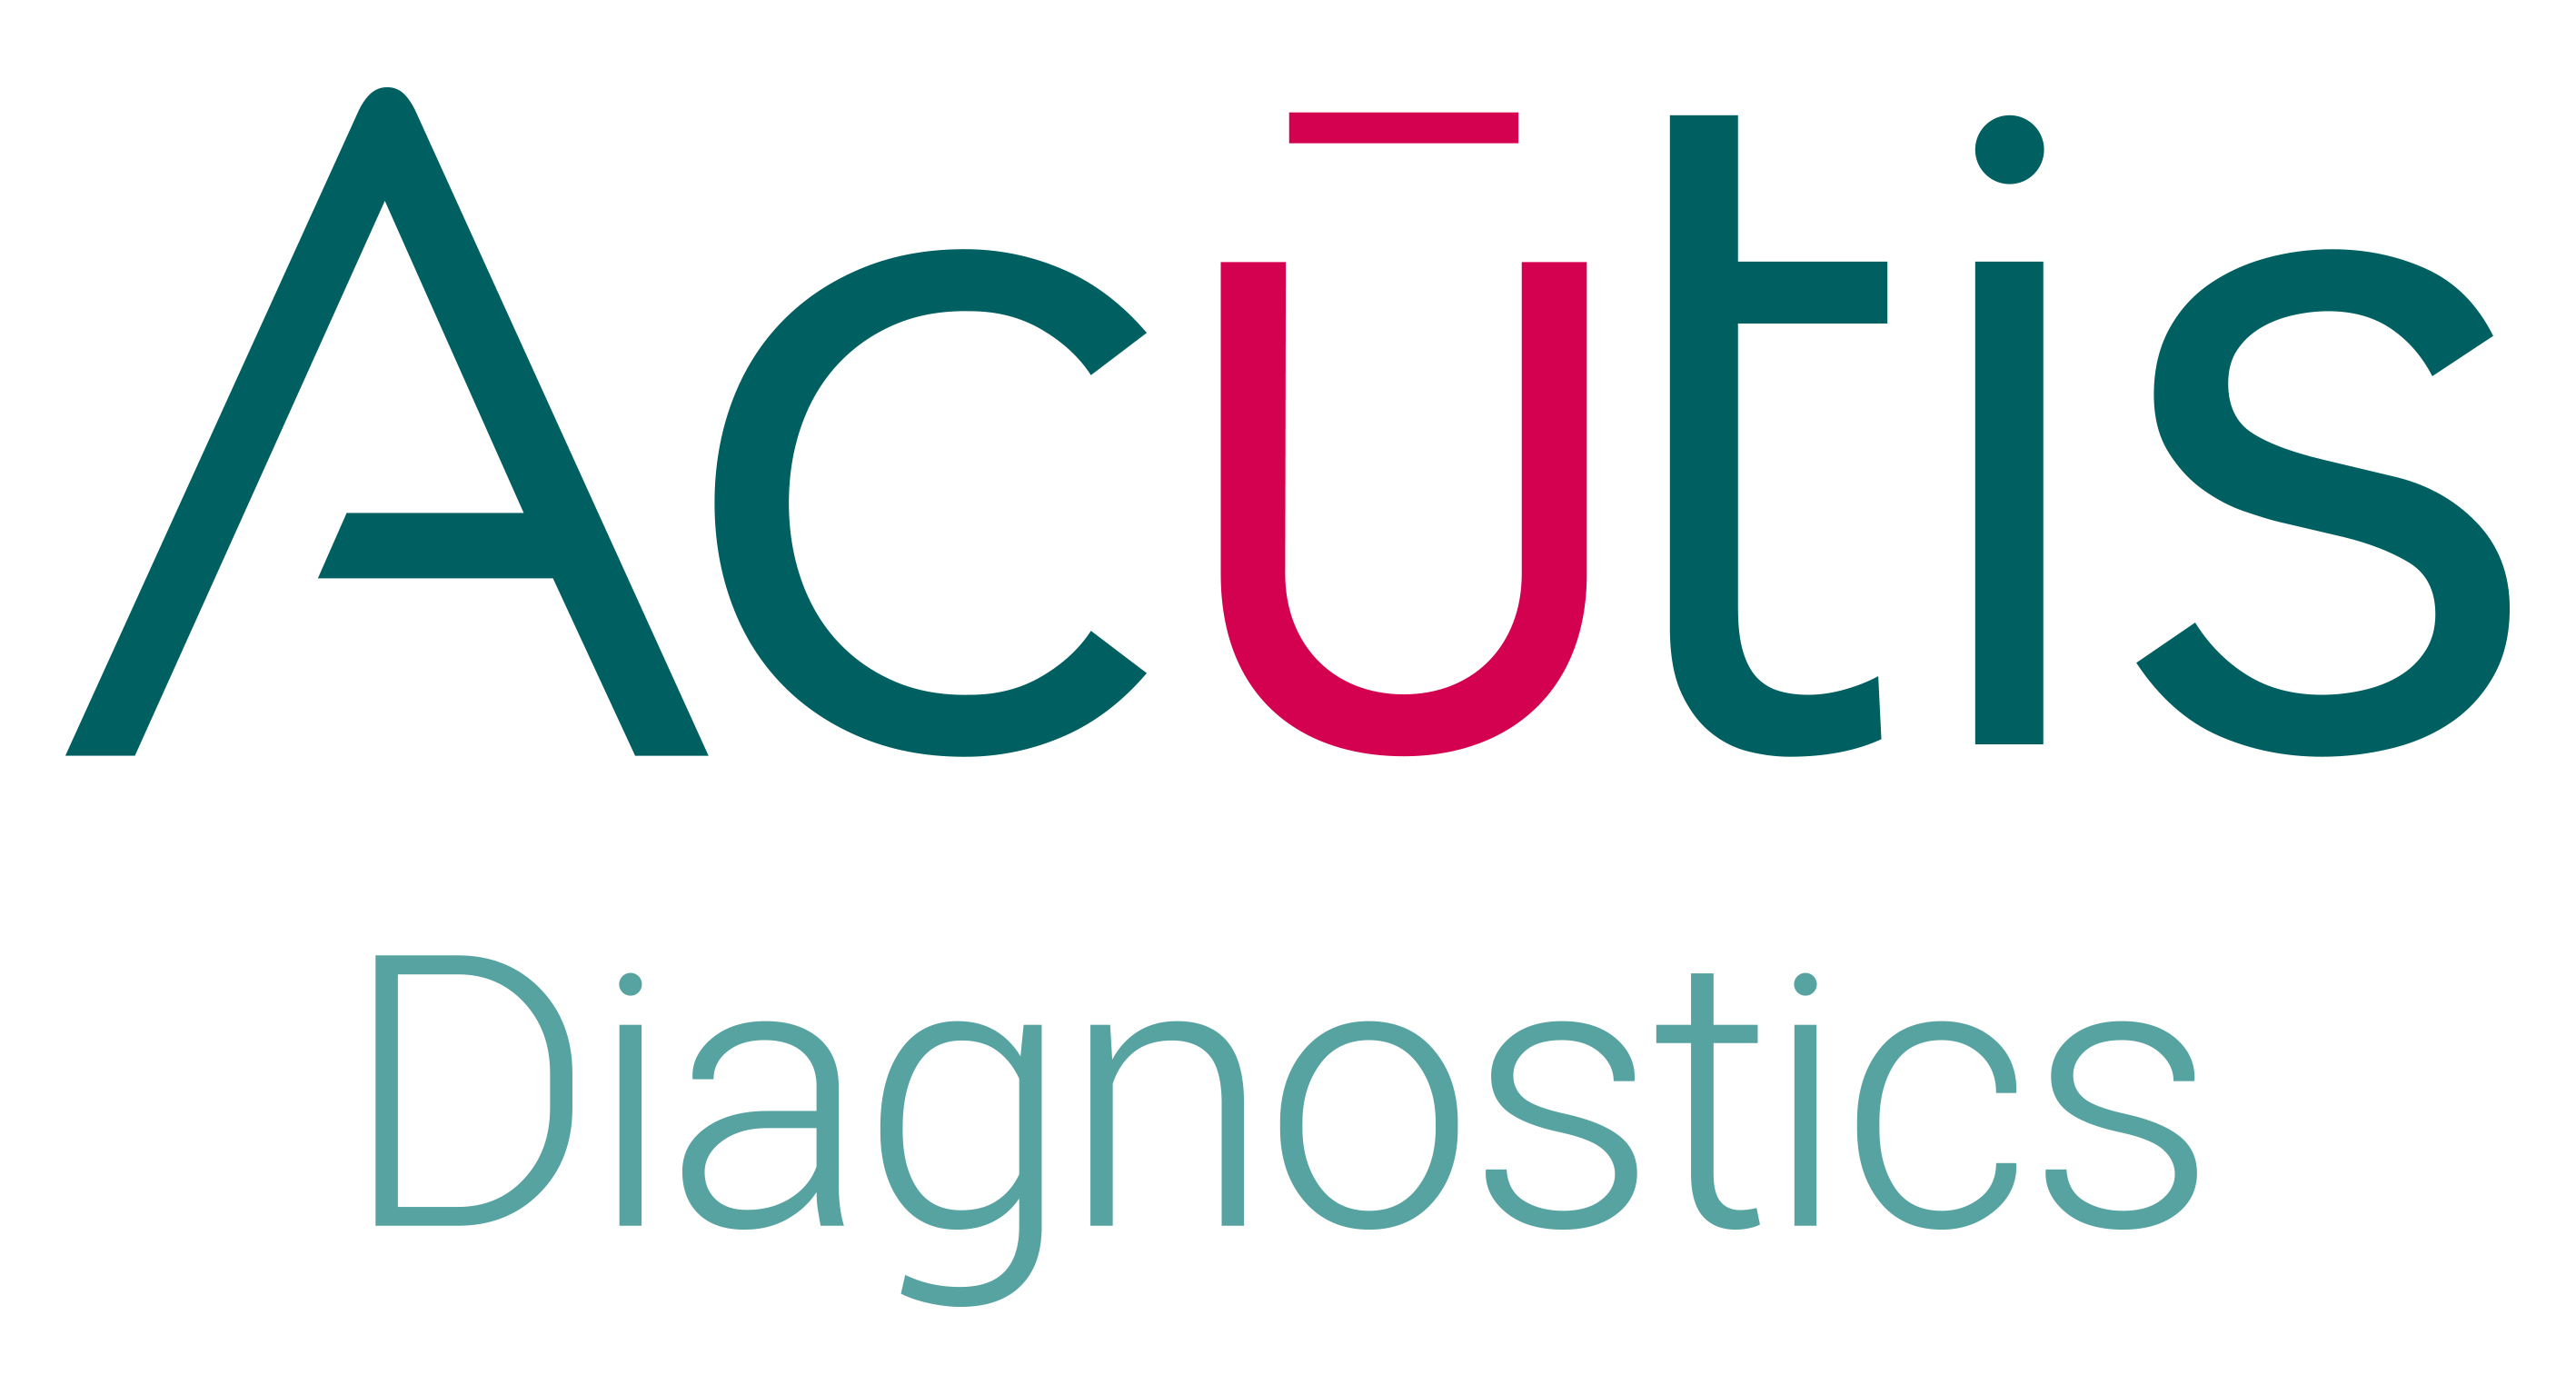 Acutis Diagnostics Company Logo